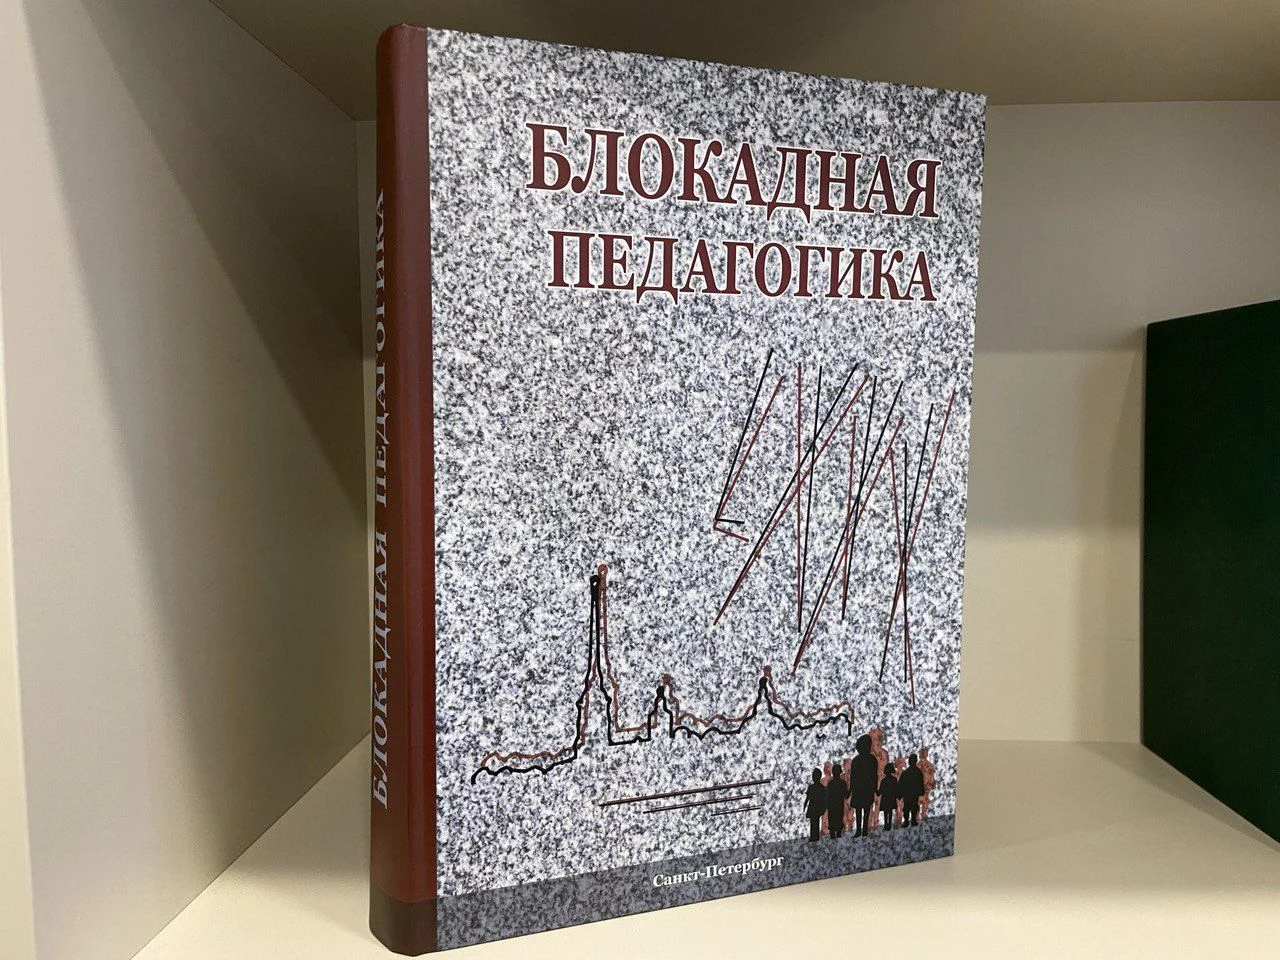 В открытом доступе появилась книга «Блокадная Педагогика», рассказывающая о системе образования в осажденном Ленинграде